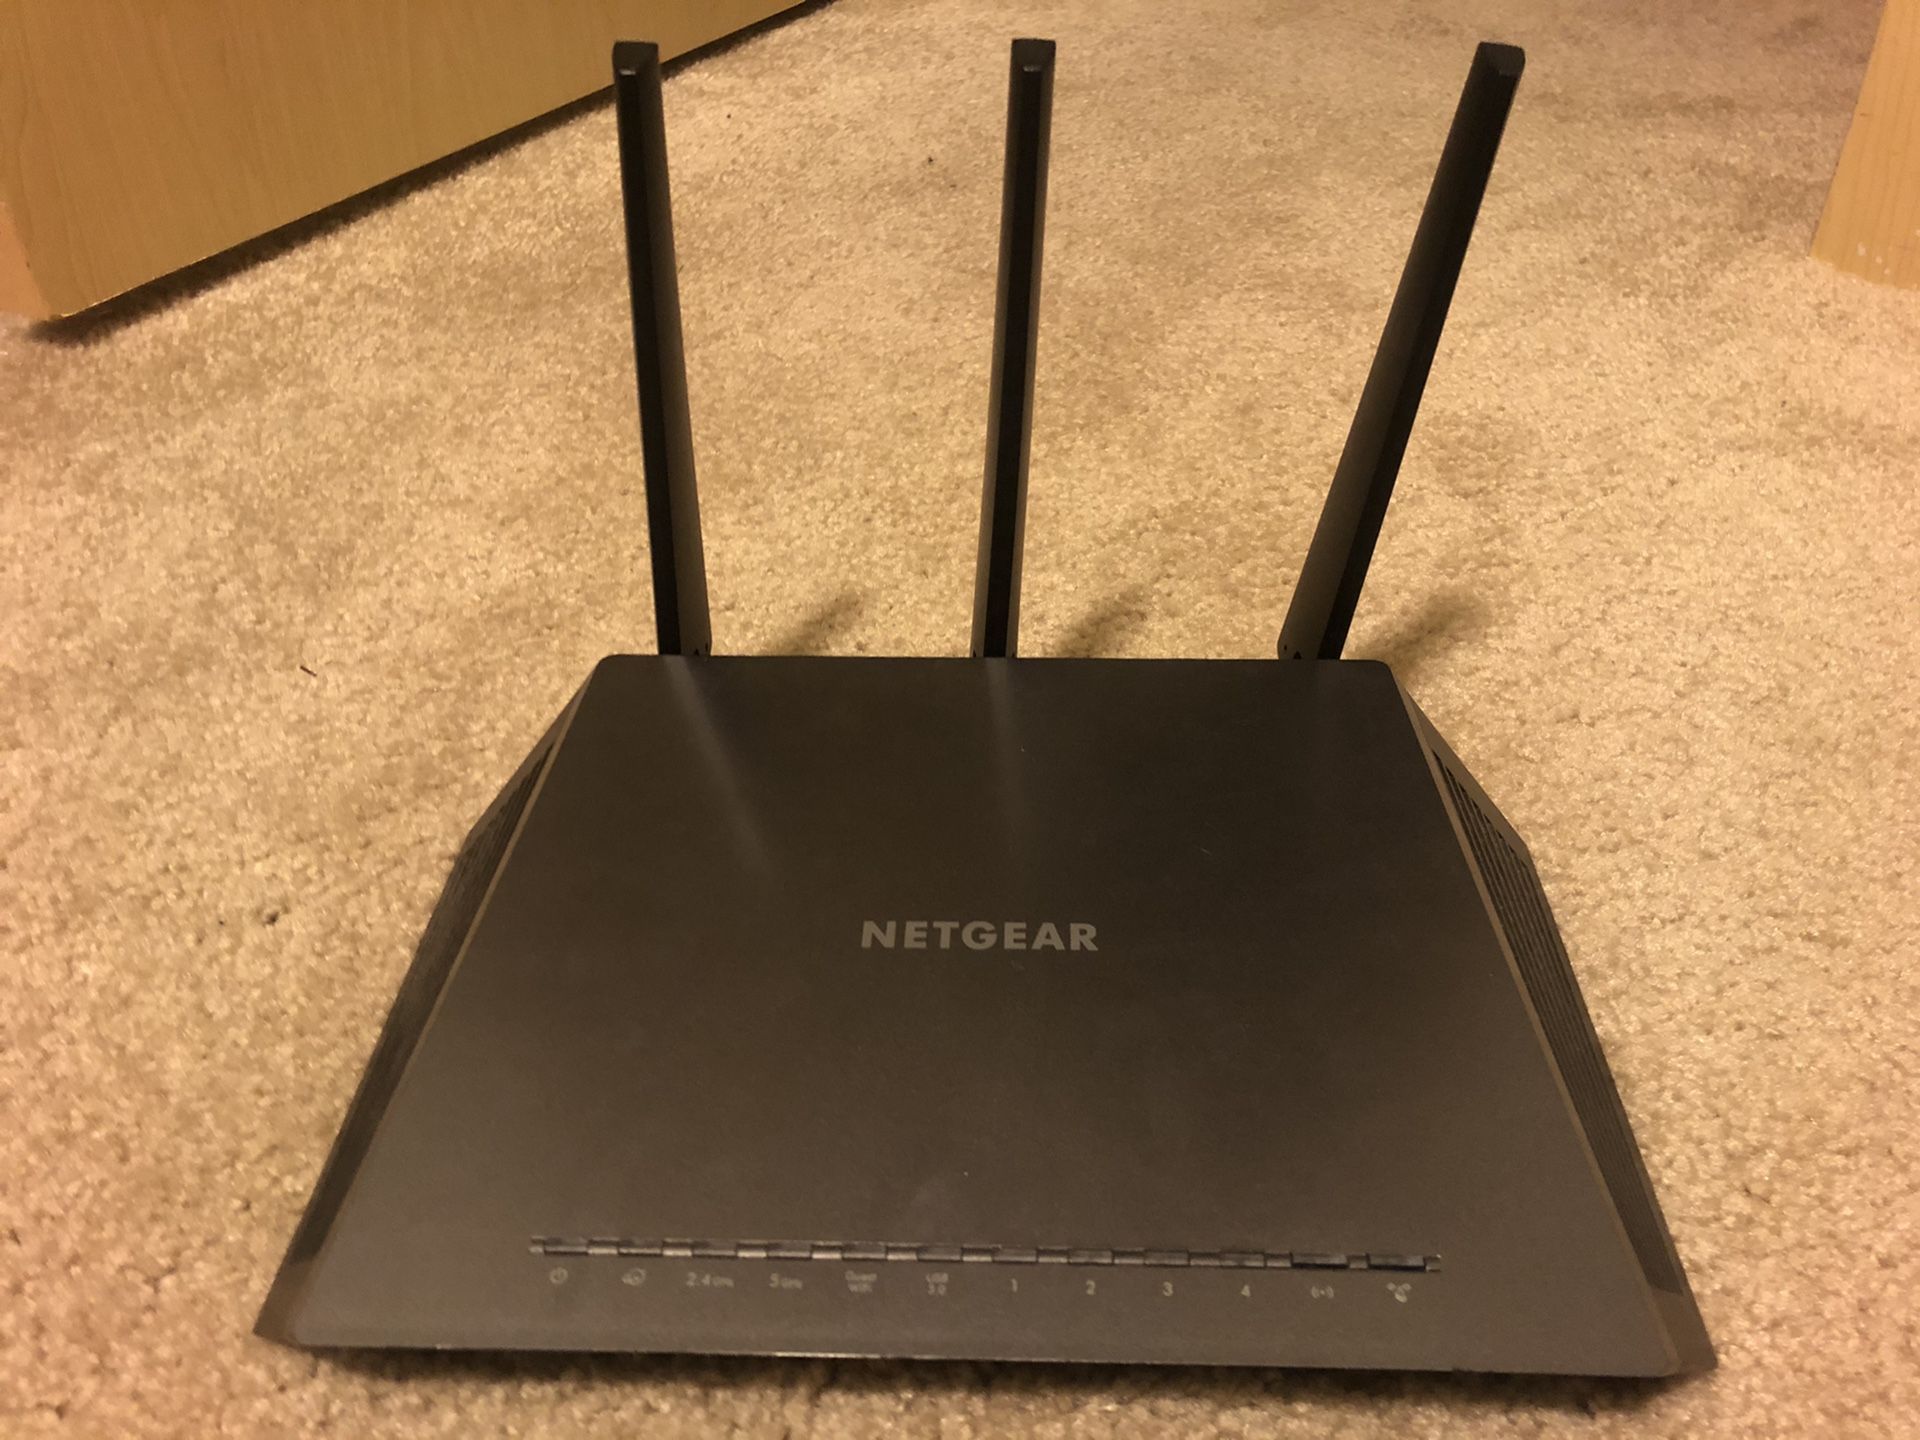 Netgear AC1750 router